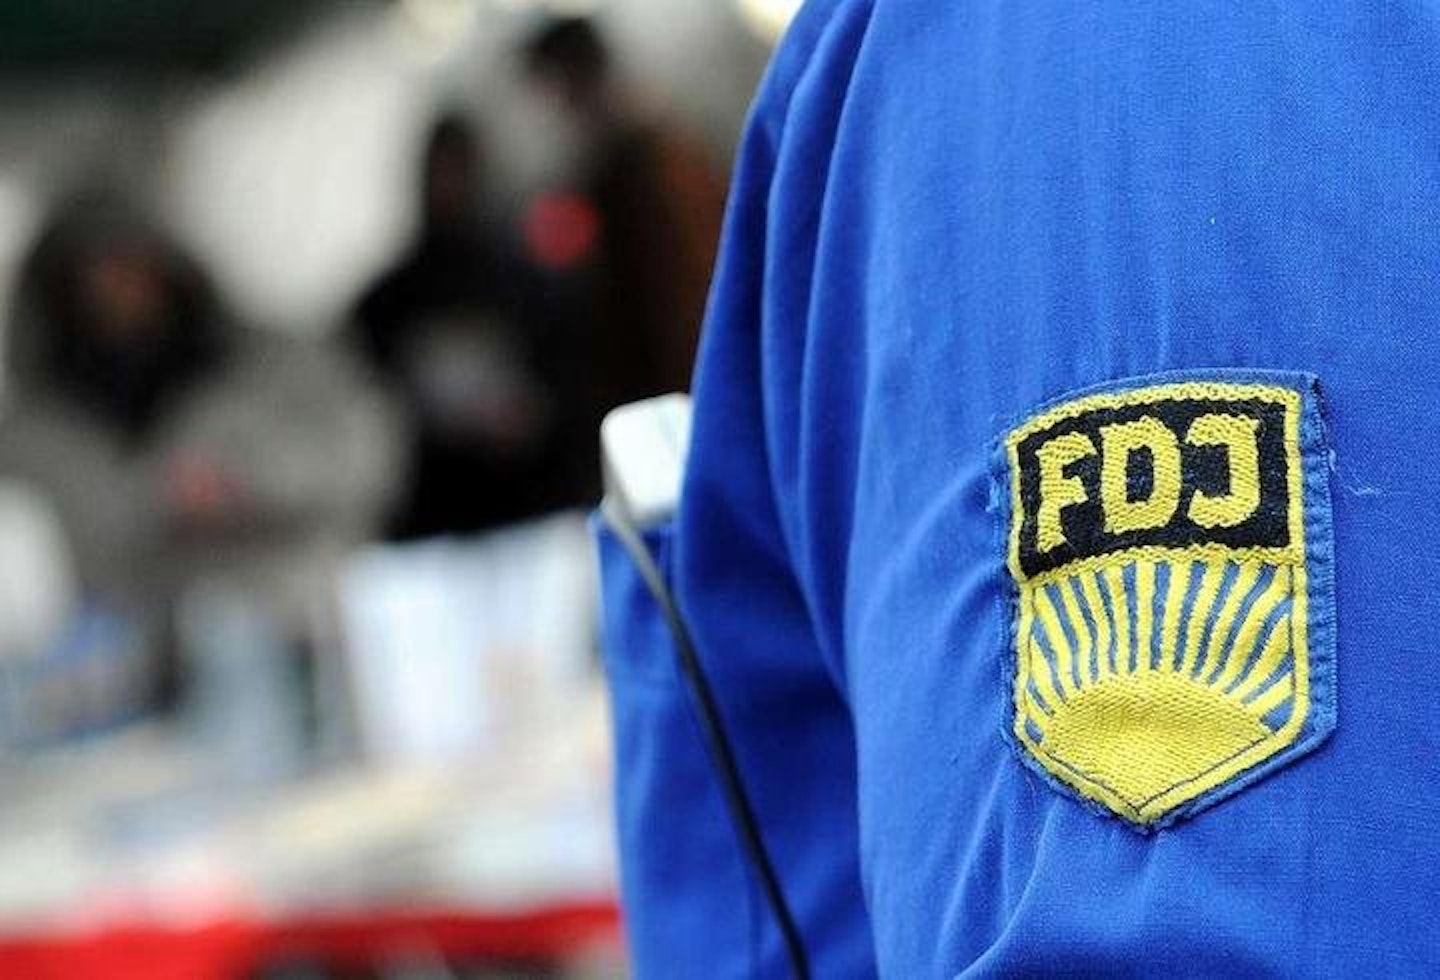 In Westdeutschland verboten, im Osten erlaubt: Seit Jahren kommt es immer wieder zu juristischen Auseinandersetzungen um die FDJ-Hemden.